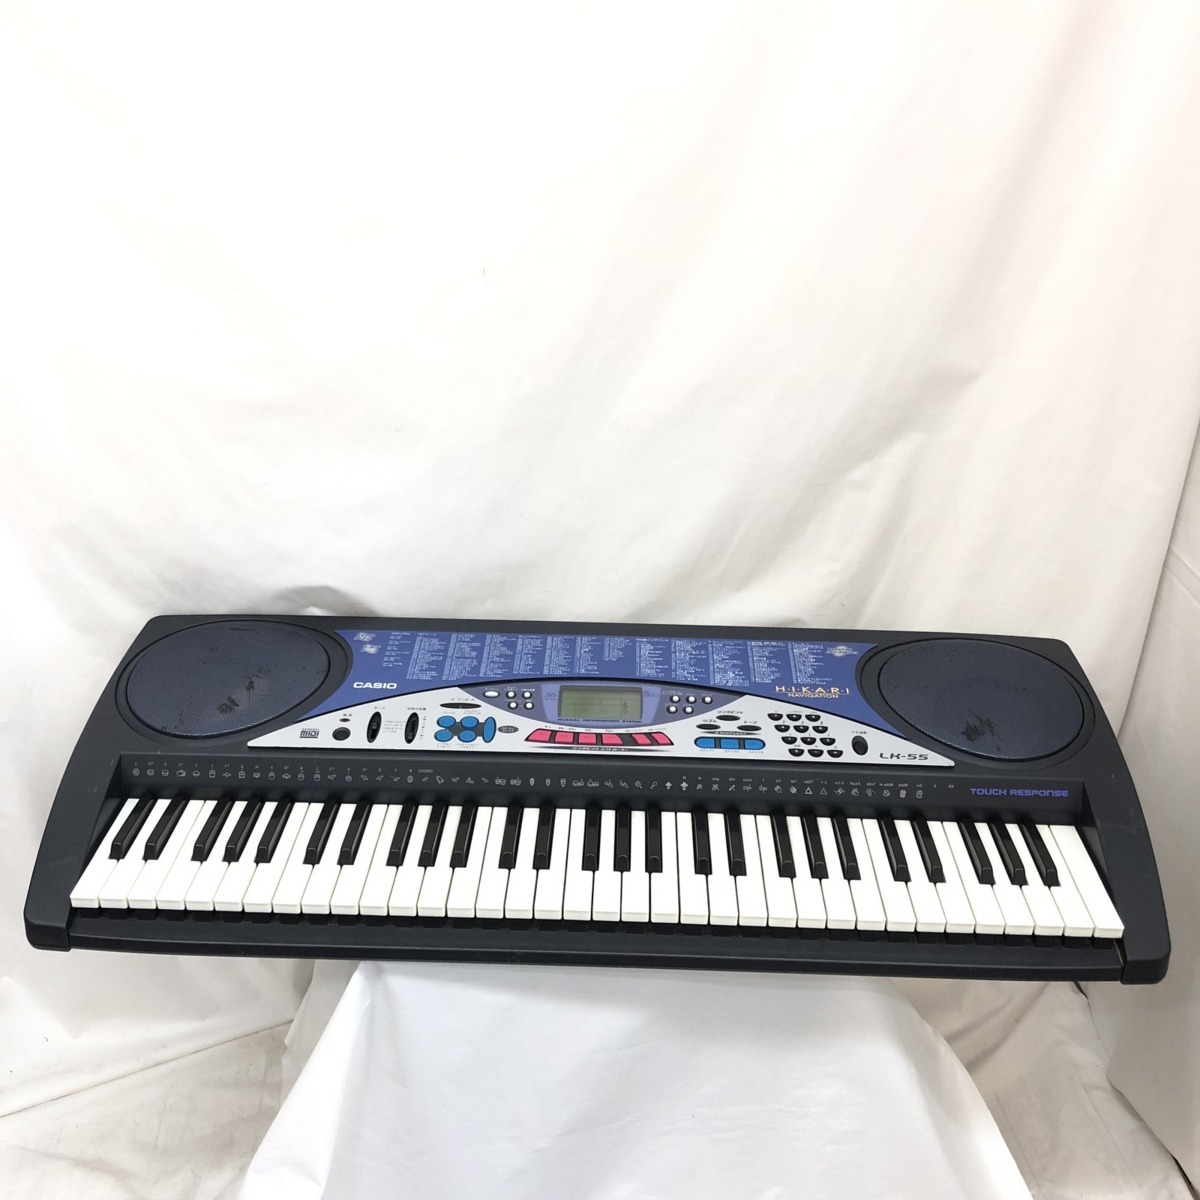 ●日本正規品● カシオ CASIO 中古 電子キーボード H15251 アダプター付き 鍵盤楽器 電子ピアノ 光ナビゲーション ダークネイビー系 61鍵盤 LK-55 カシオ